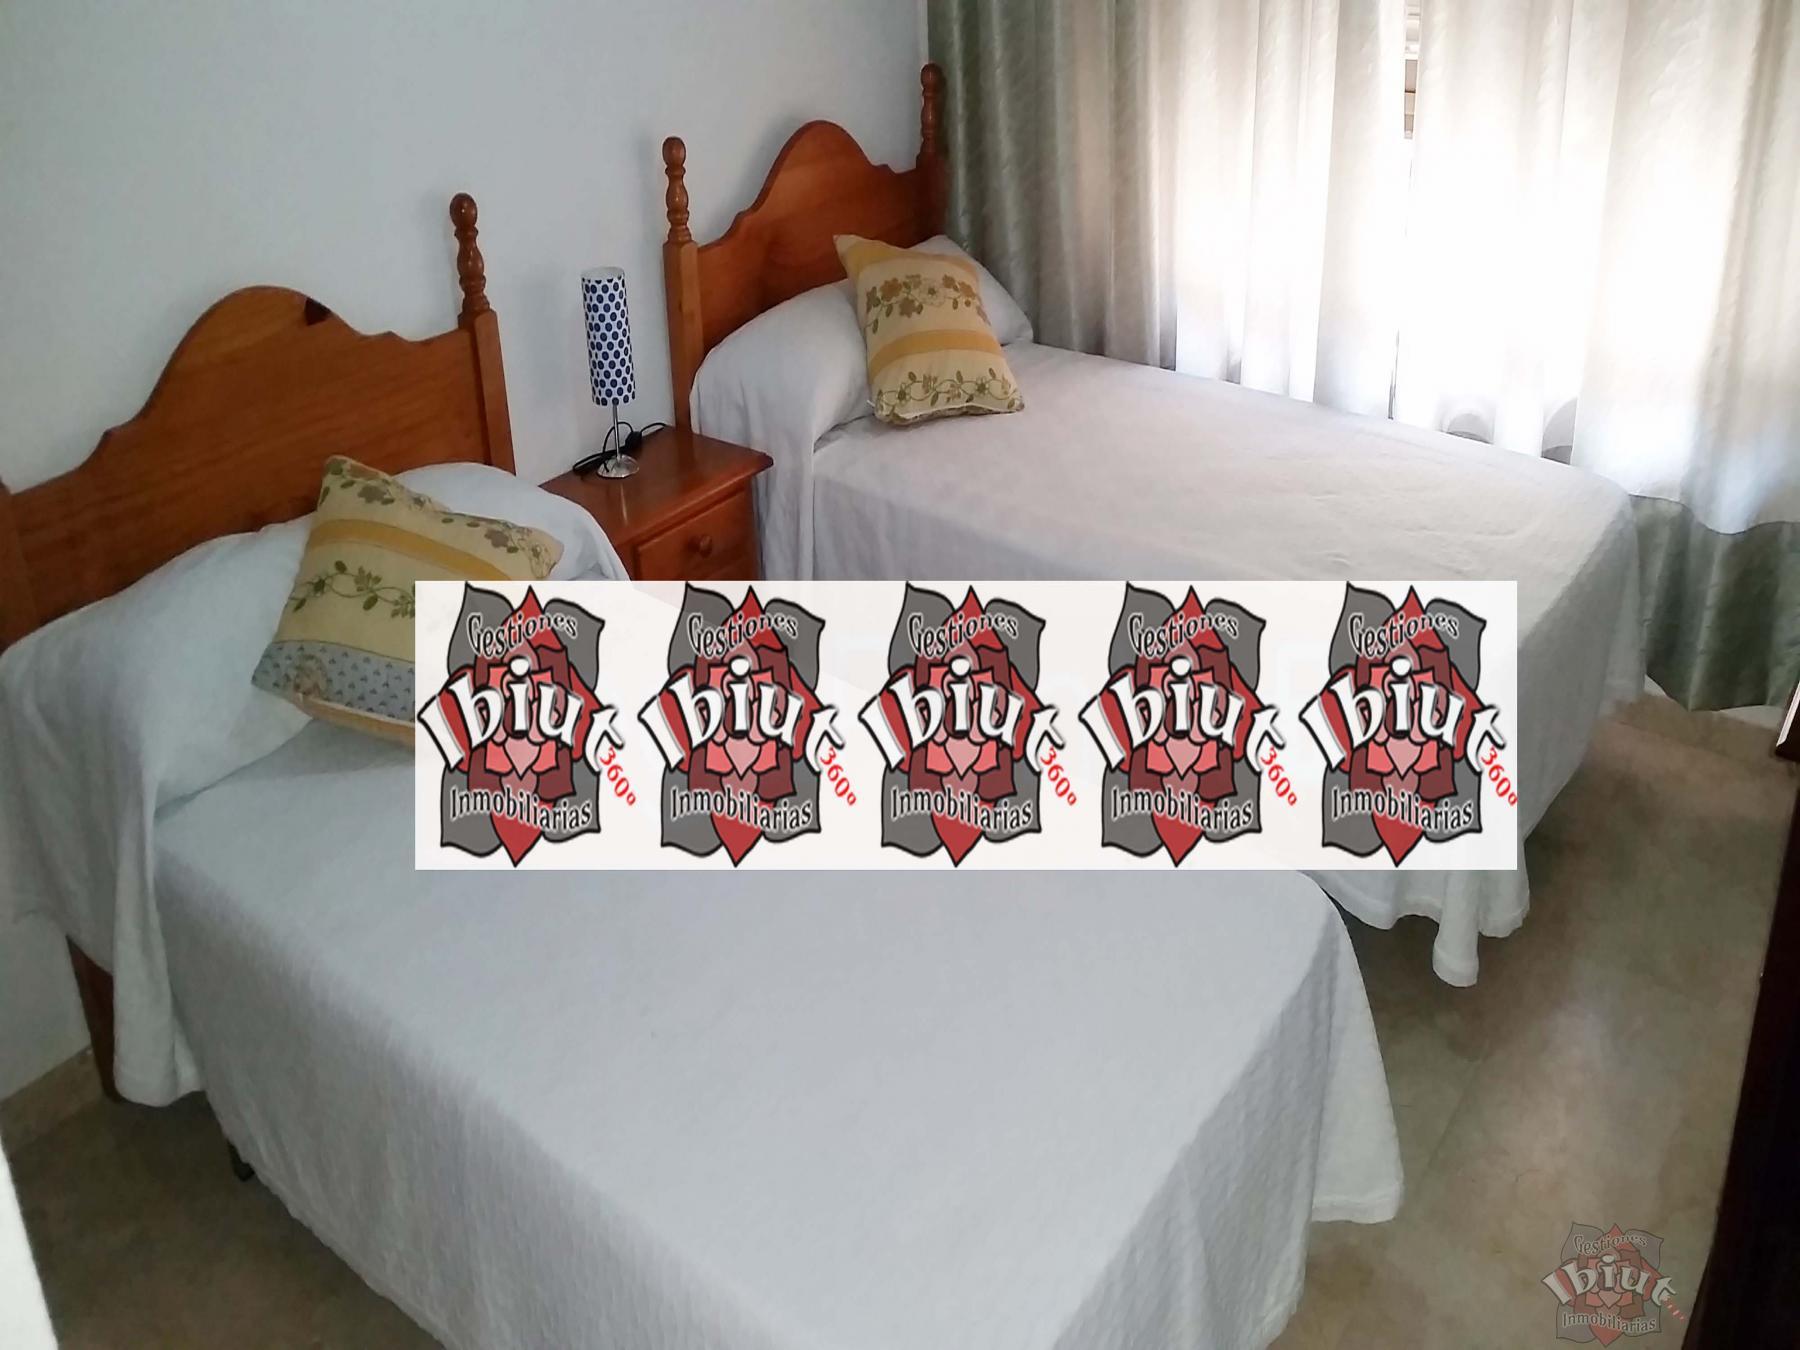 For rent of flat in Algarrobo Costa